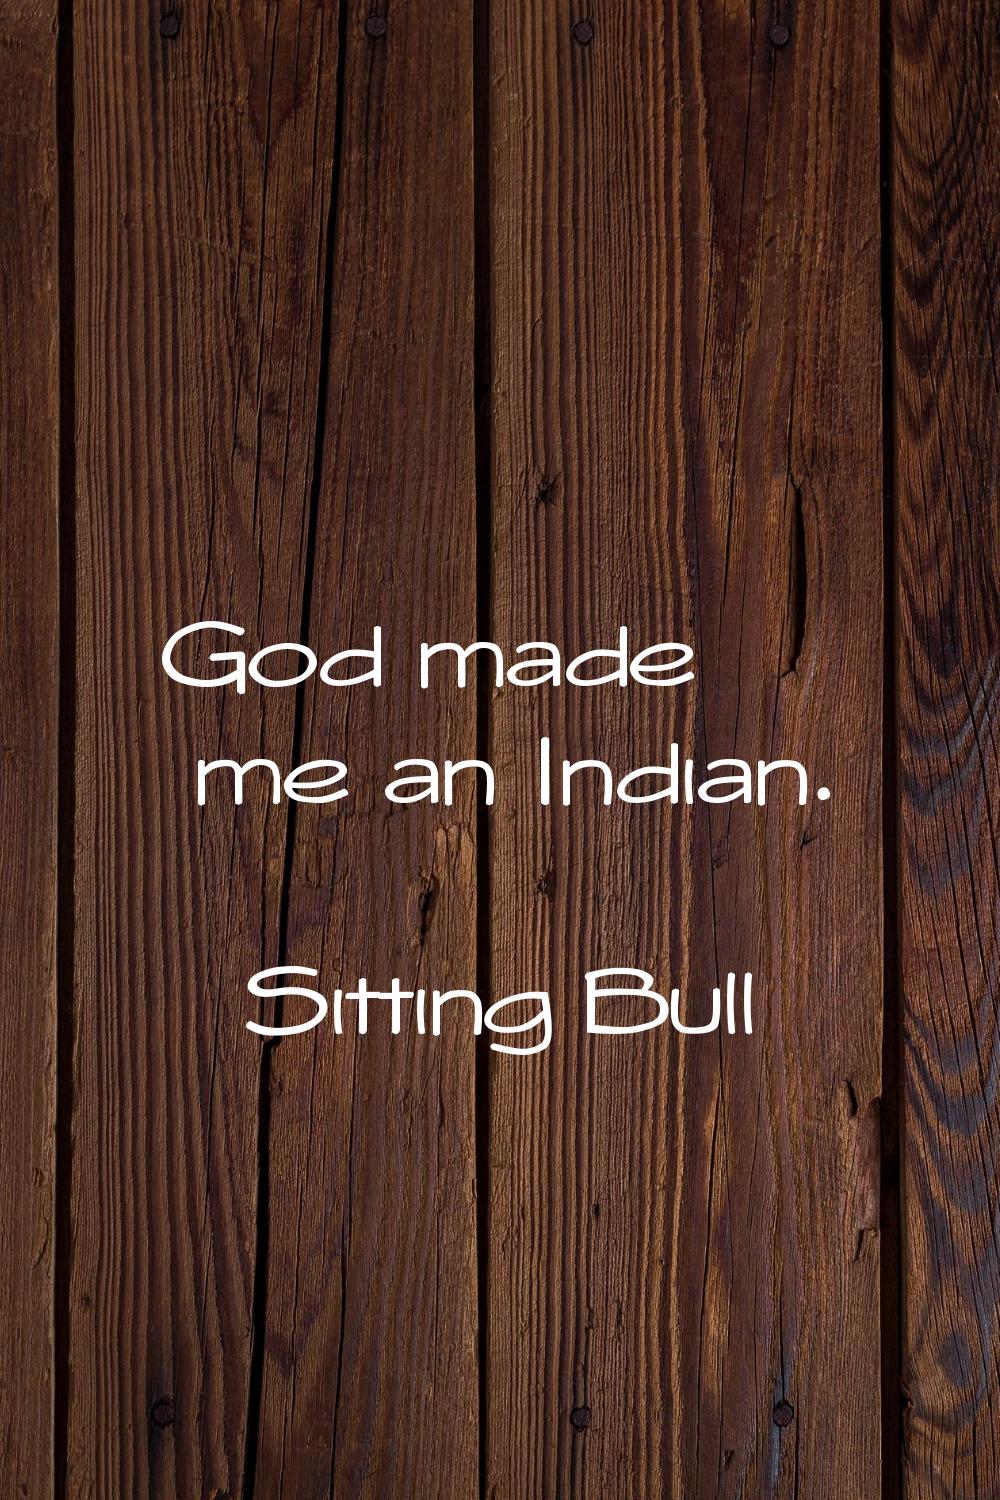 God made me an Indian.